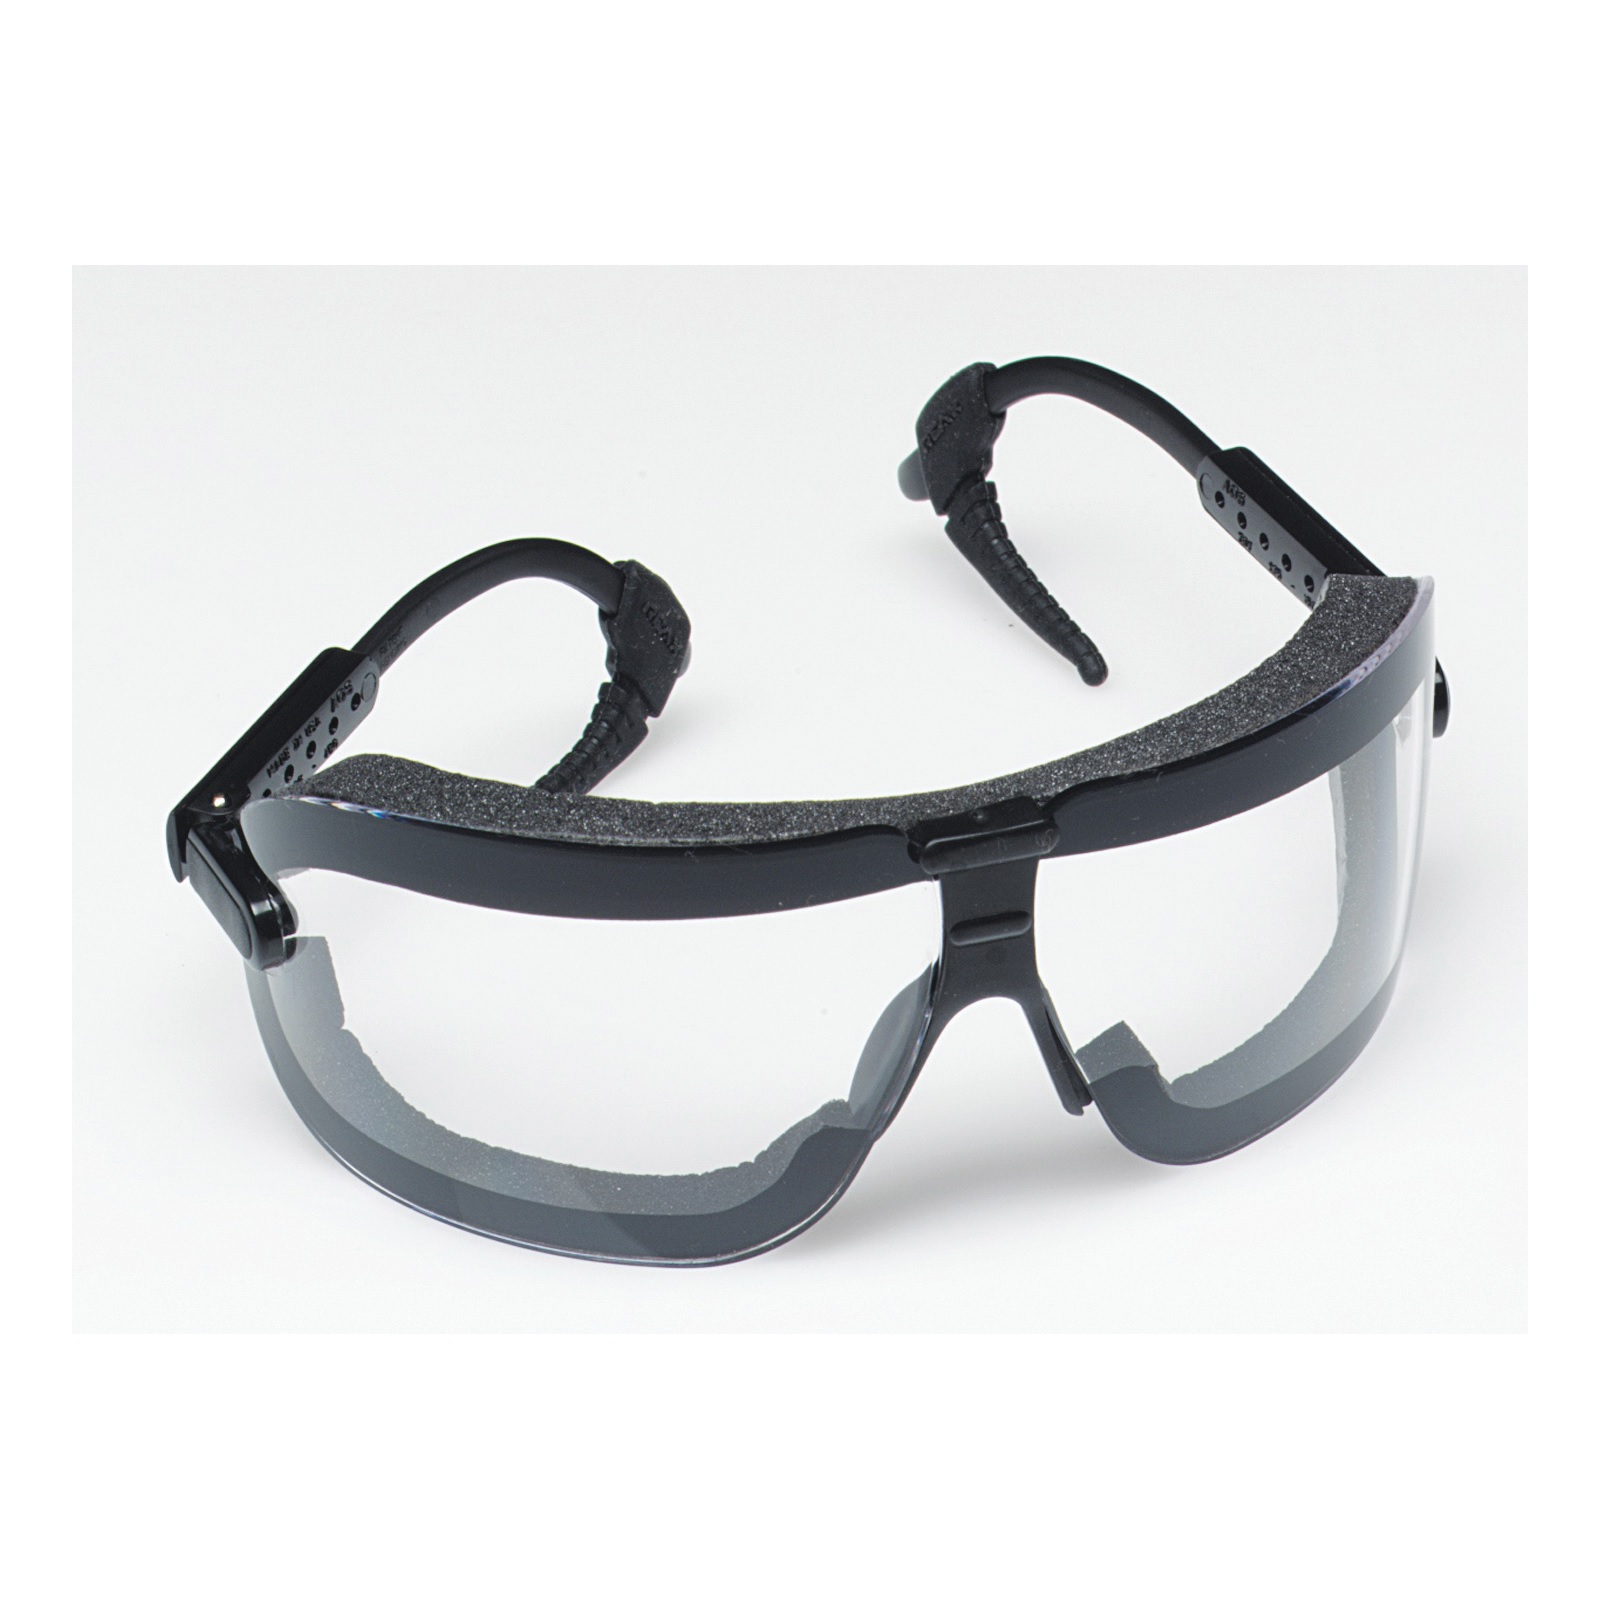 GLASSES FECTOGOGGLES MEDIUM - Goggles